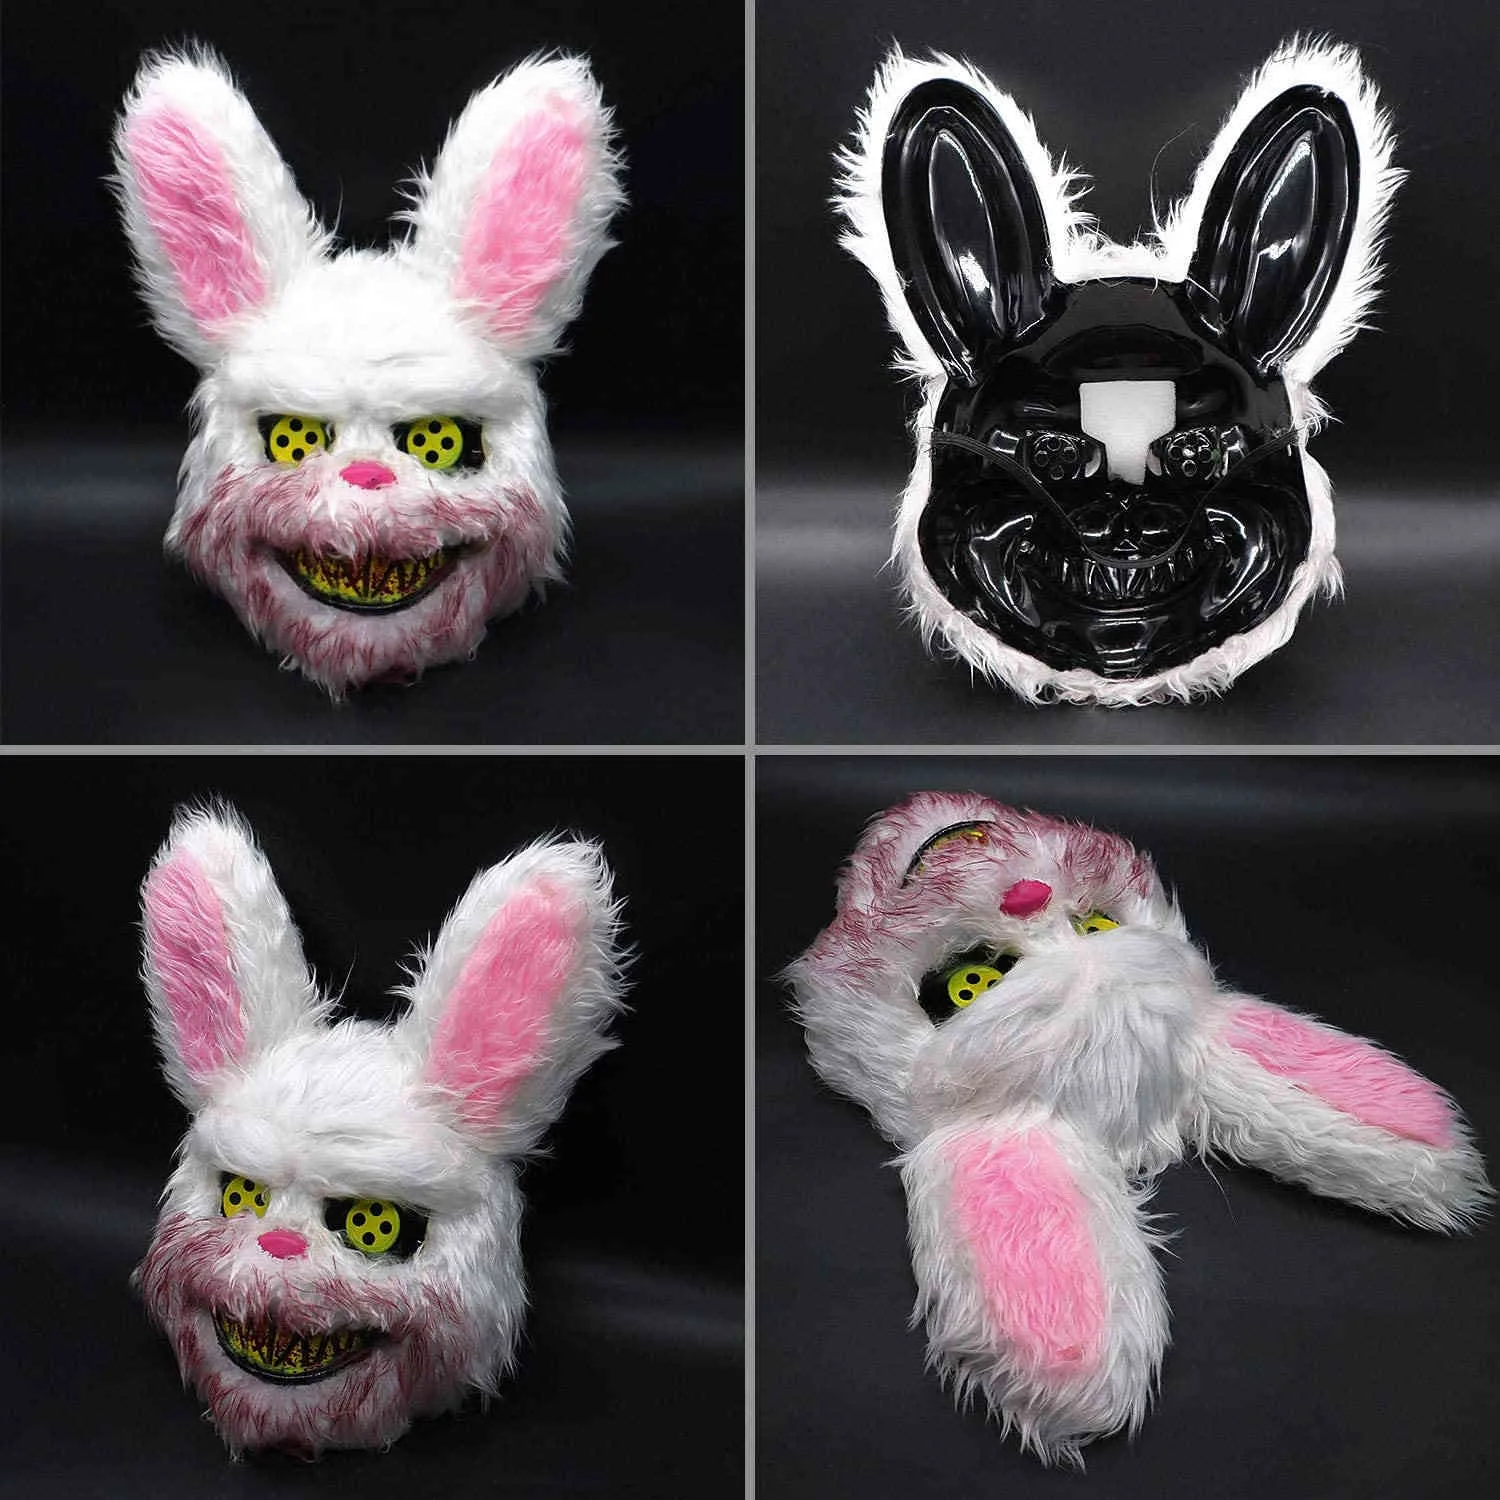 Gruseliger blutiger Hase Wolf Bär Plüschmaske Halloween Party Cosplay Kostüm Requisiten Gruseliger Kopf für Kinder Erwachsene